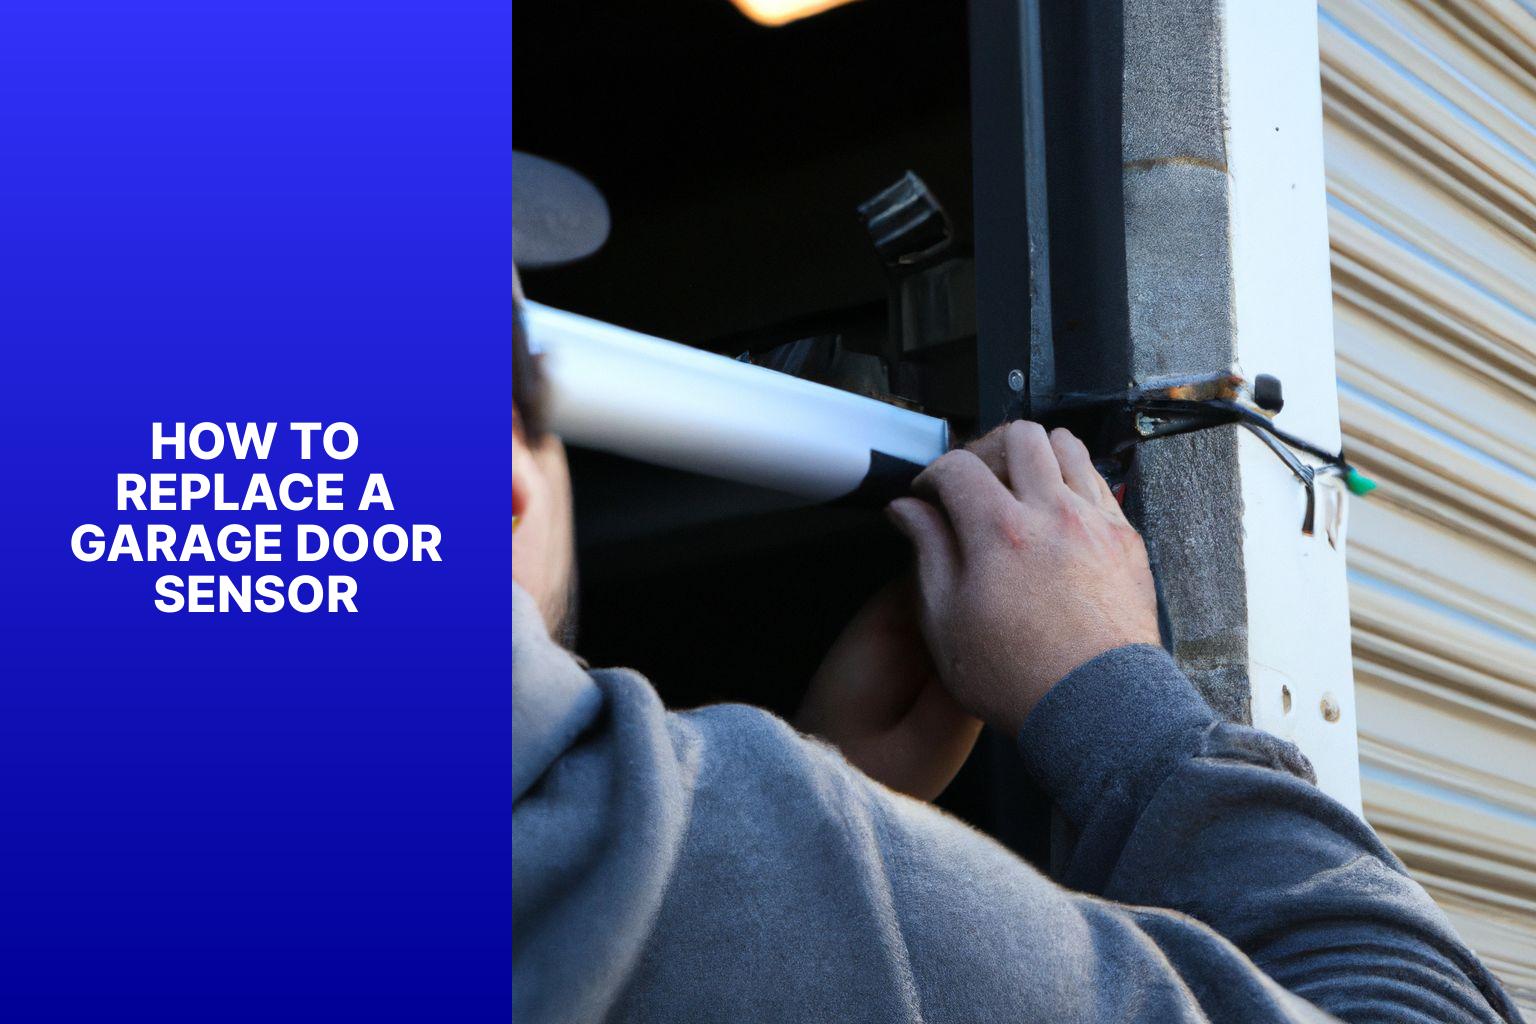 How to Replace a Garage Door Sensor